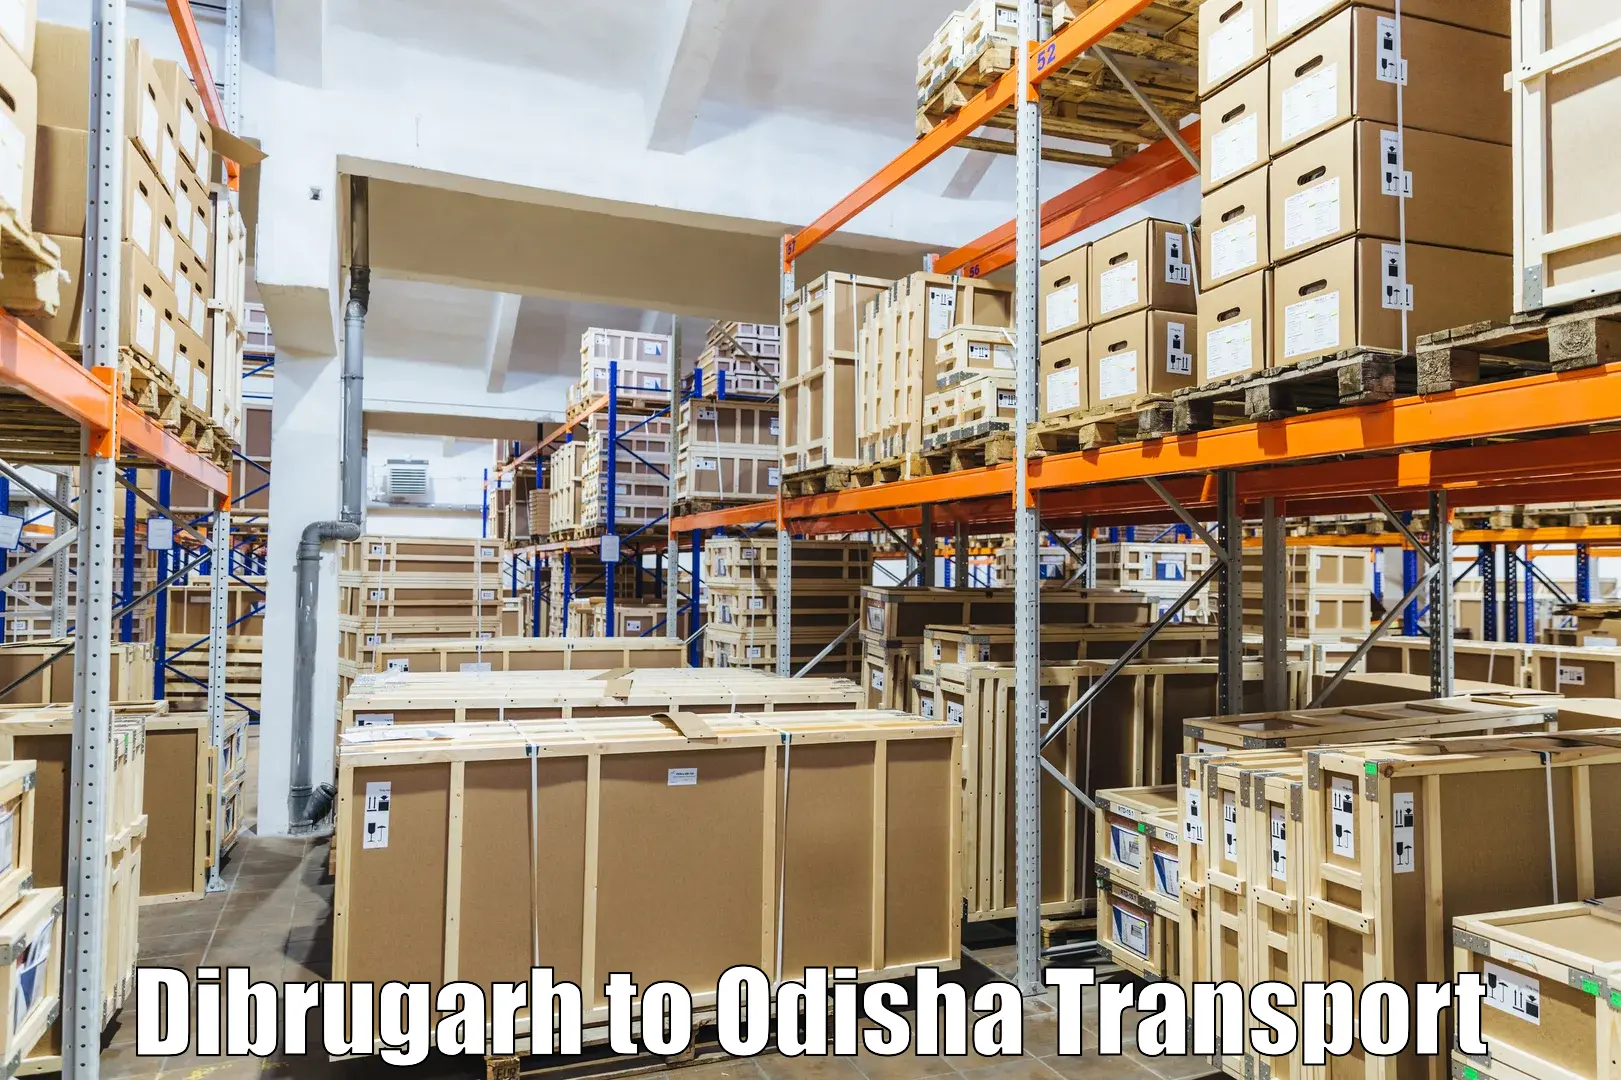 Land transport services Dibrugarh to Balikuda